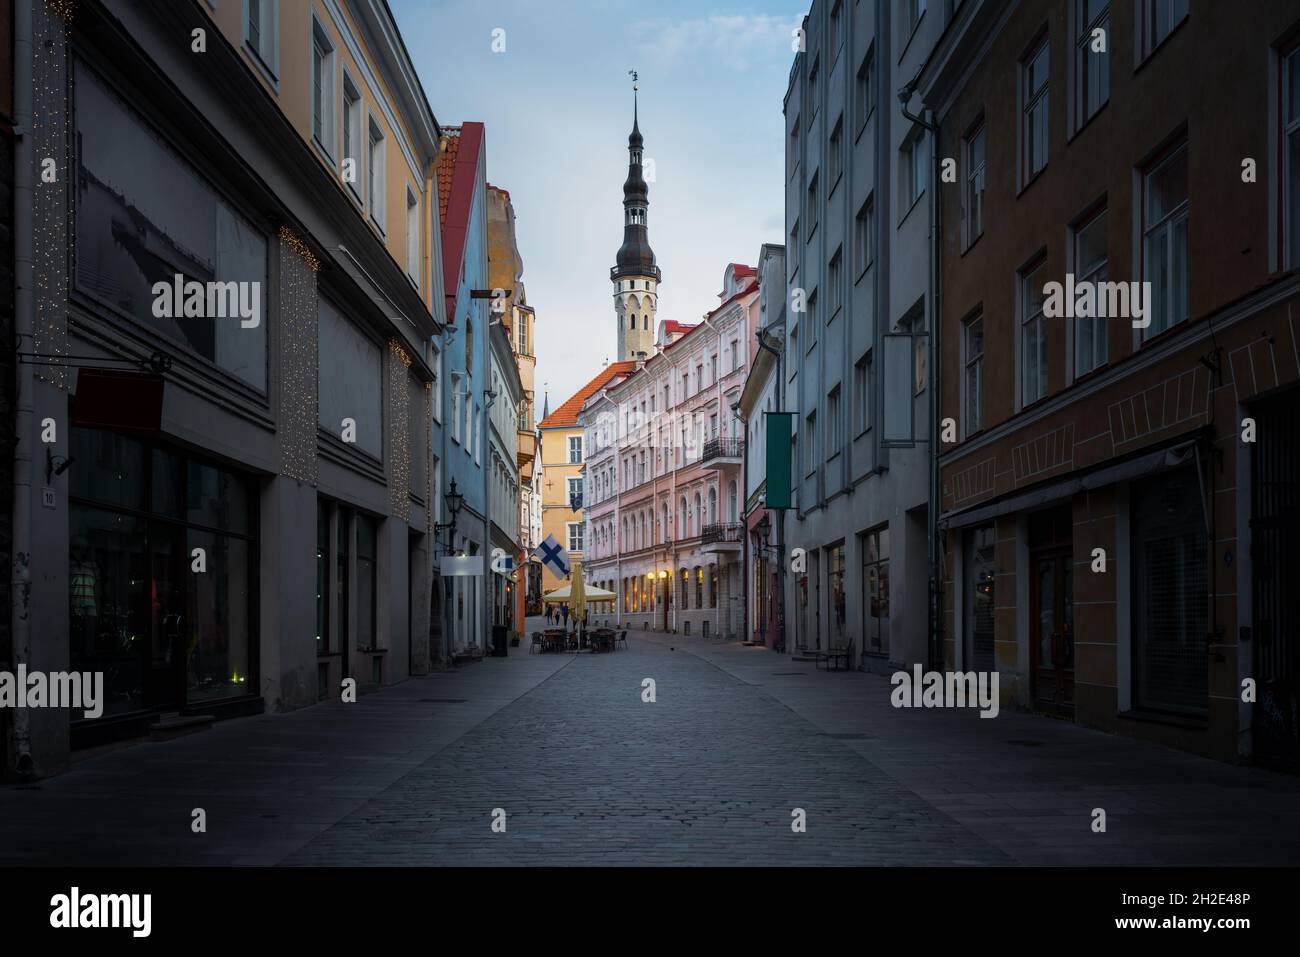 Vieille ville de Tallinn rue Viru avec la tour de l'hôtel de ville de Tallinn en arrière-plan - Tallinn, Estonie Banque D'Images